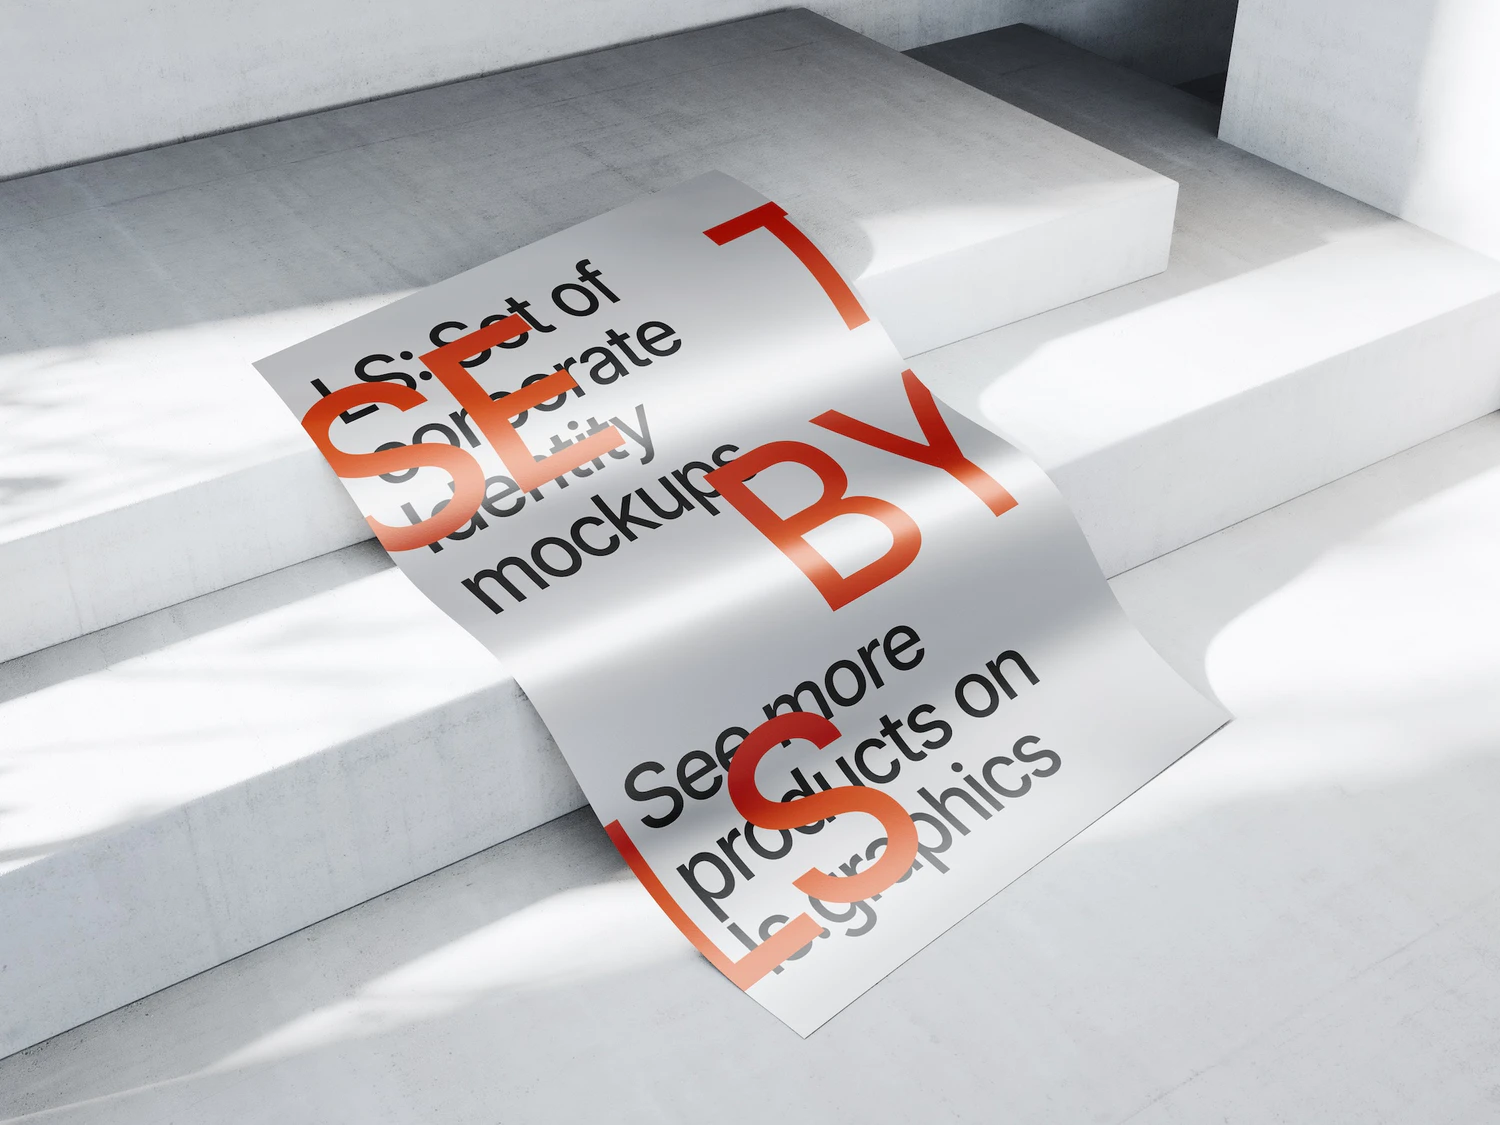 4620 21款高级极简金属纸张质感扭曲单页海报设计作品贴图PS样机素材展示效果模板套装Metallic_Paper_Mockups@GOOODME.COM